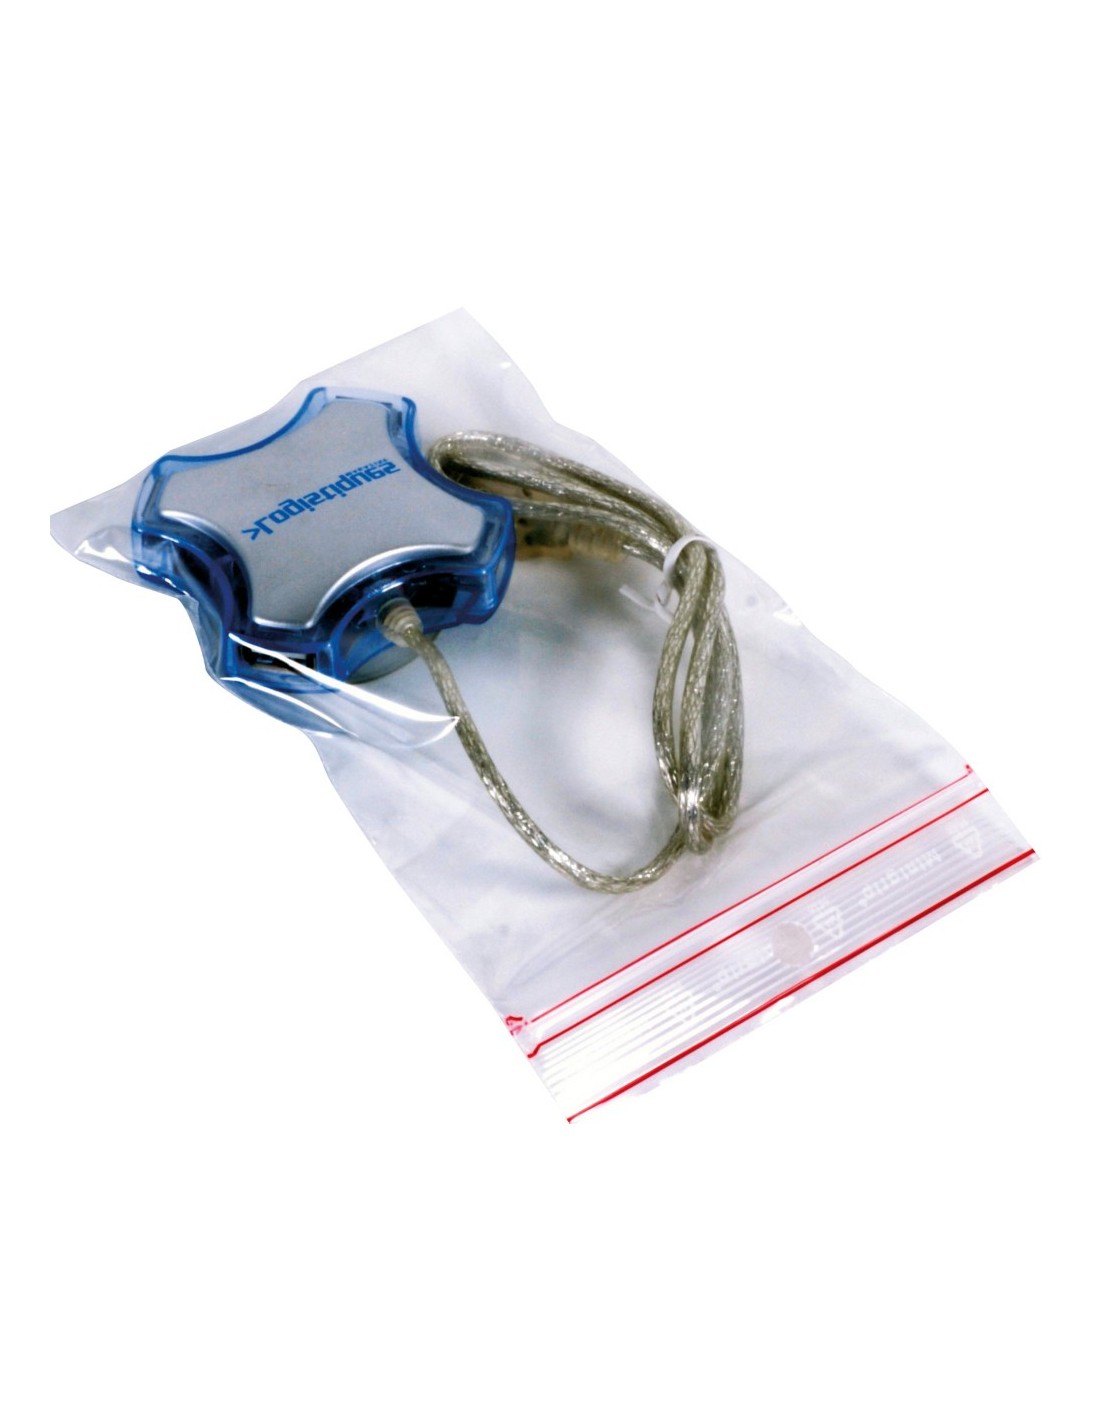 Boîte de 1000 sachets plastique à fermeture zip transparent 60 microns -  H40 cm ouverture 30 cm ≡ CALIPAGE